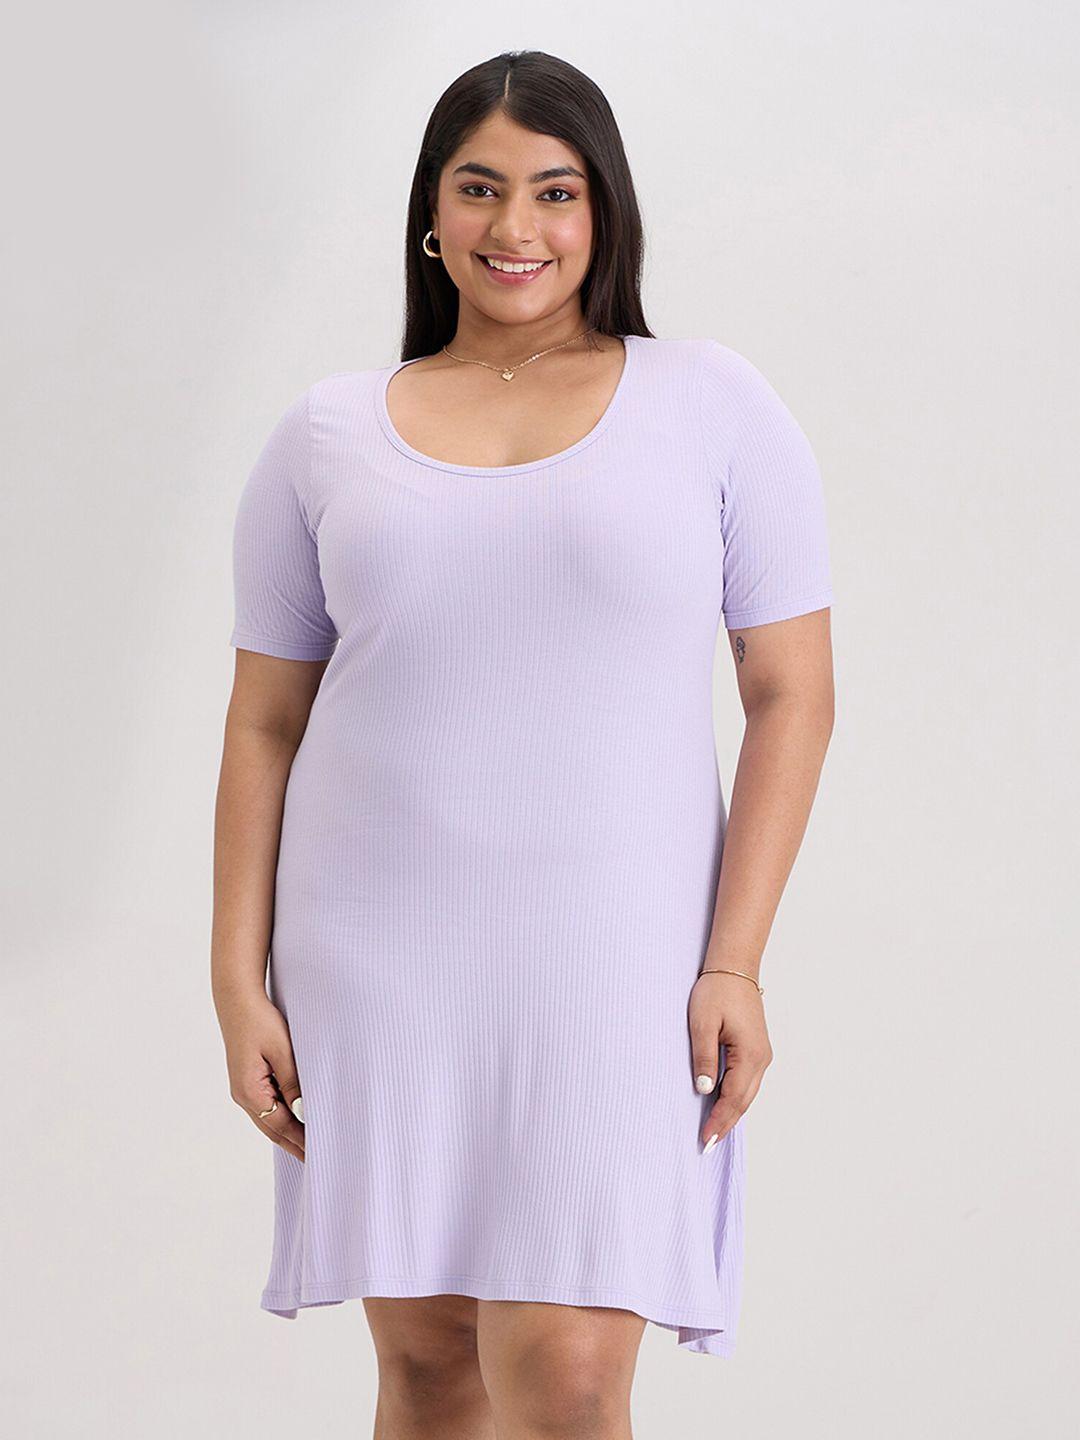 20dresses plus size violet round neck a-line dress